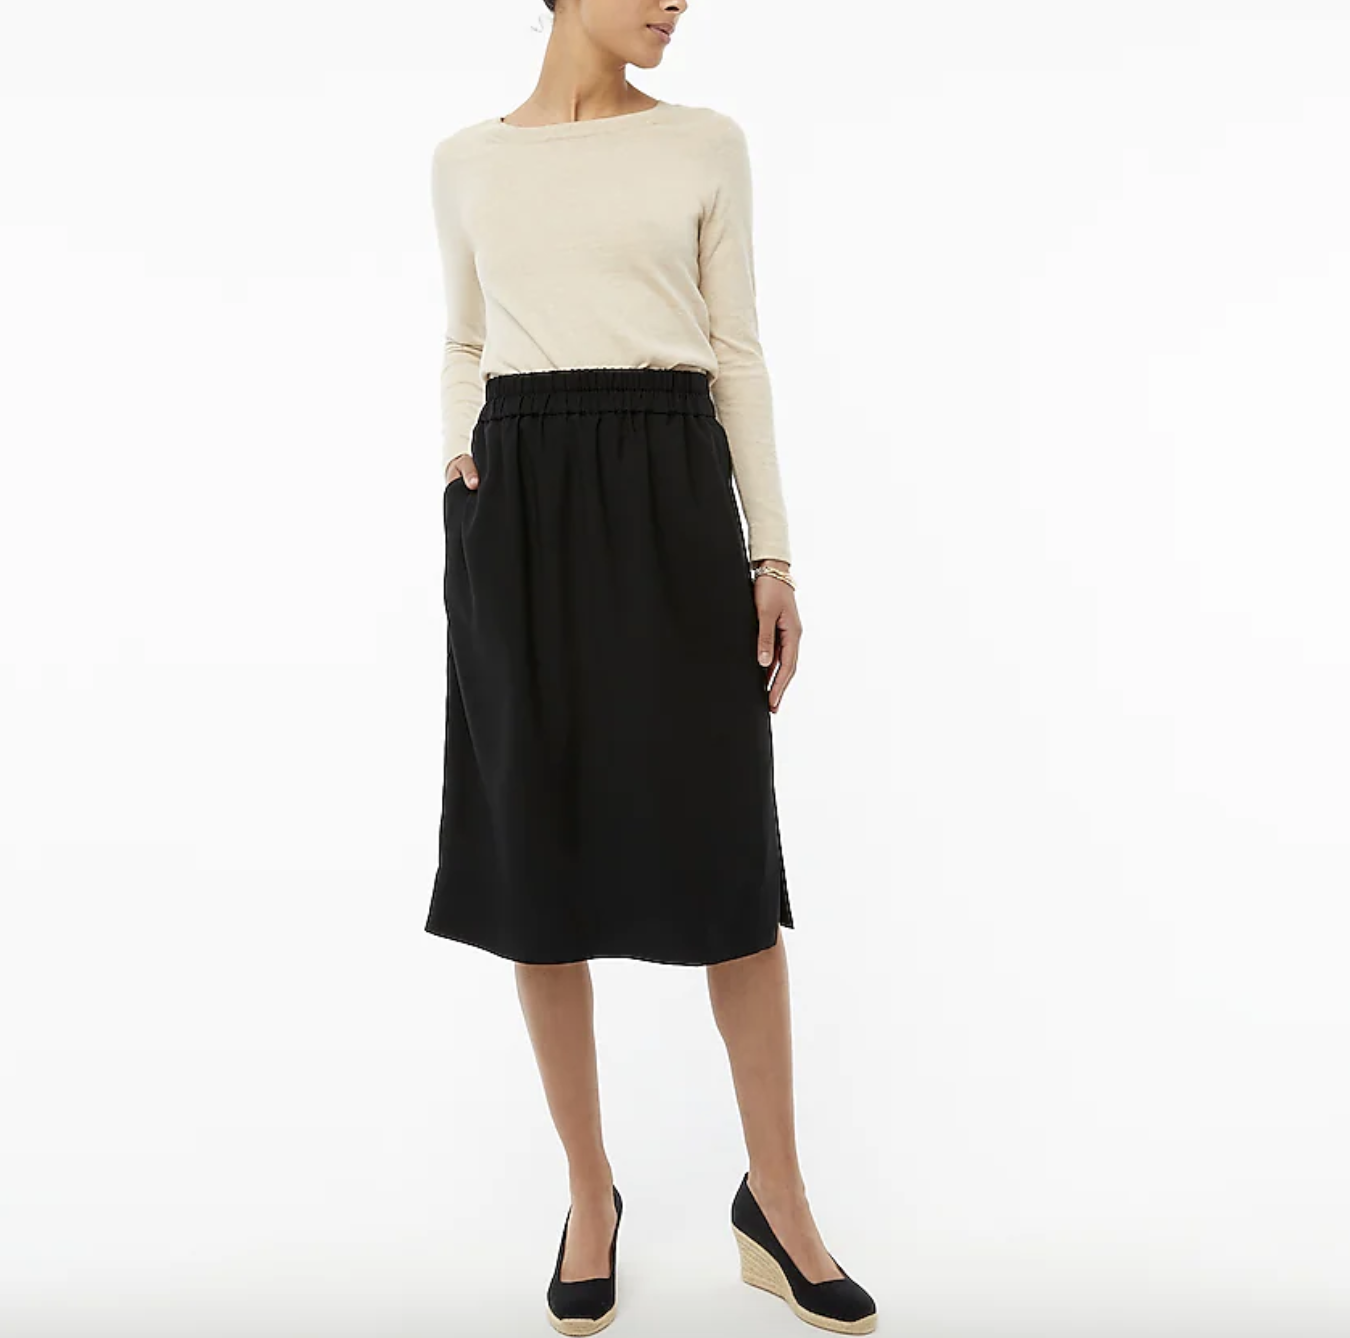 bottom half, model wearing black midi skirt